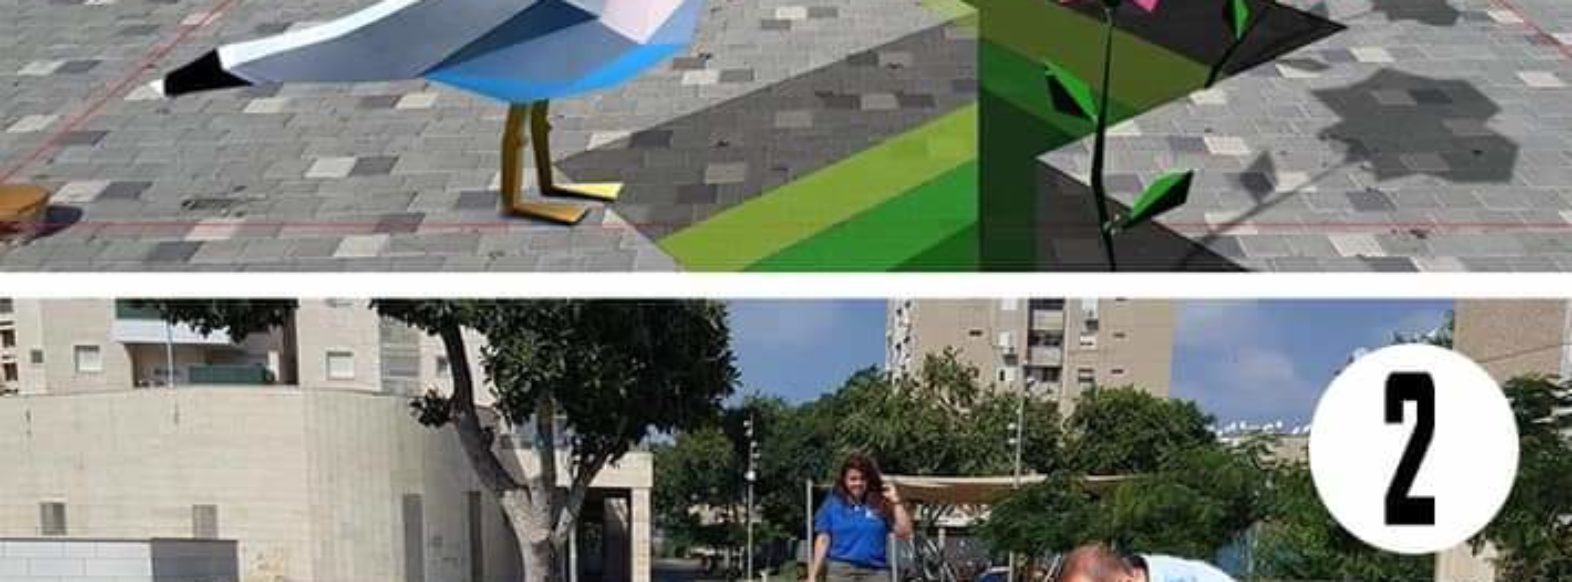 דוקורסקי משתף את תושבי העיר בבחירת ציורי רצפה תלת ממדיים